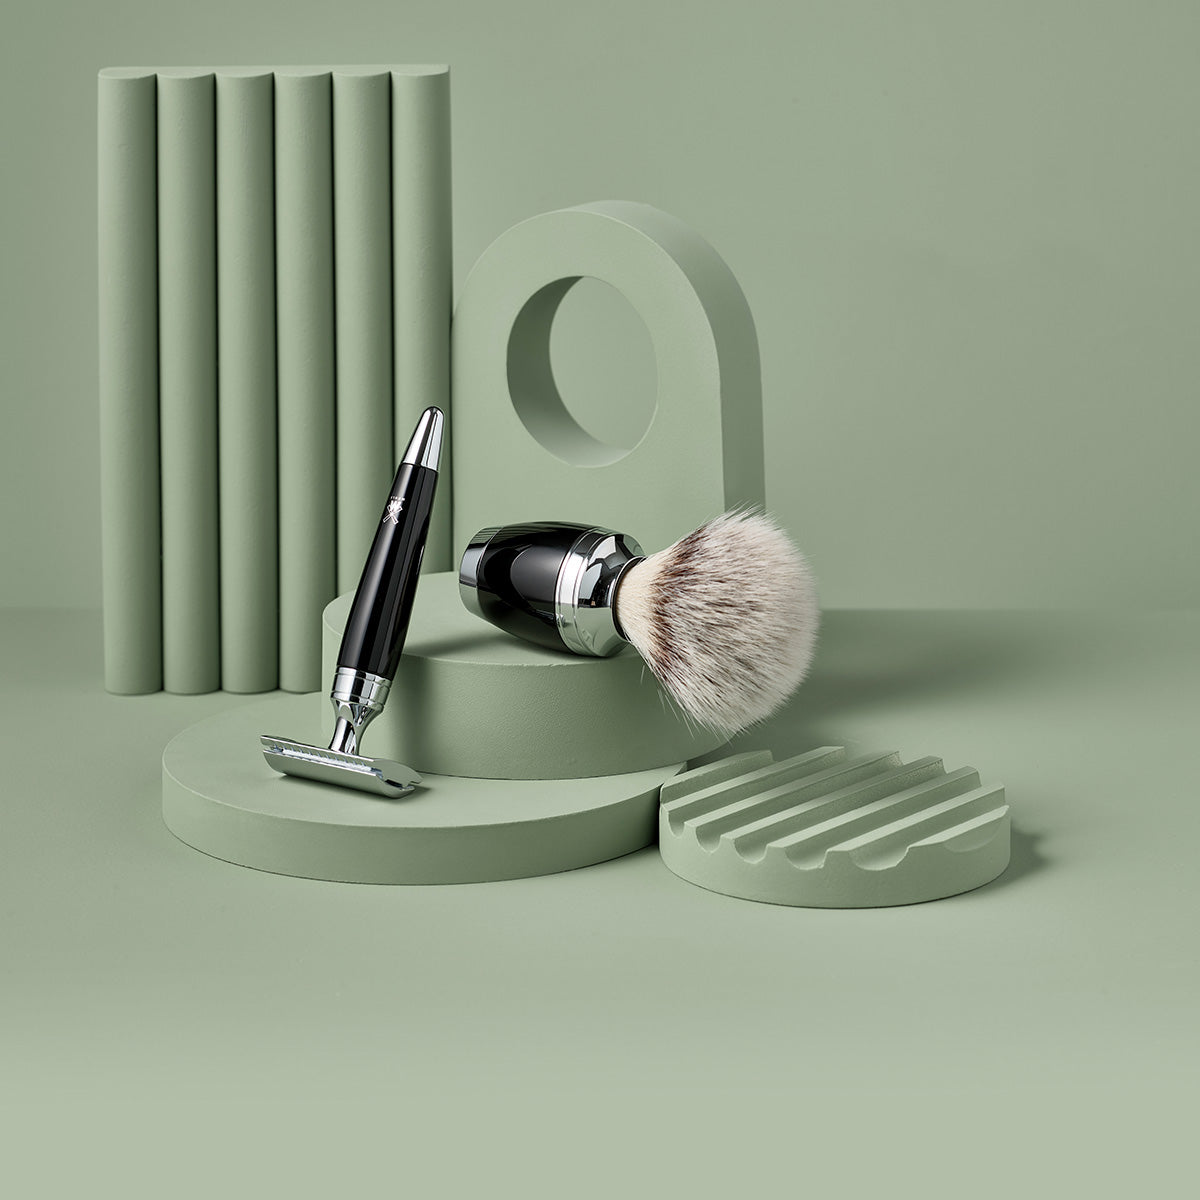 MUHLE razor and brush shaving sets